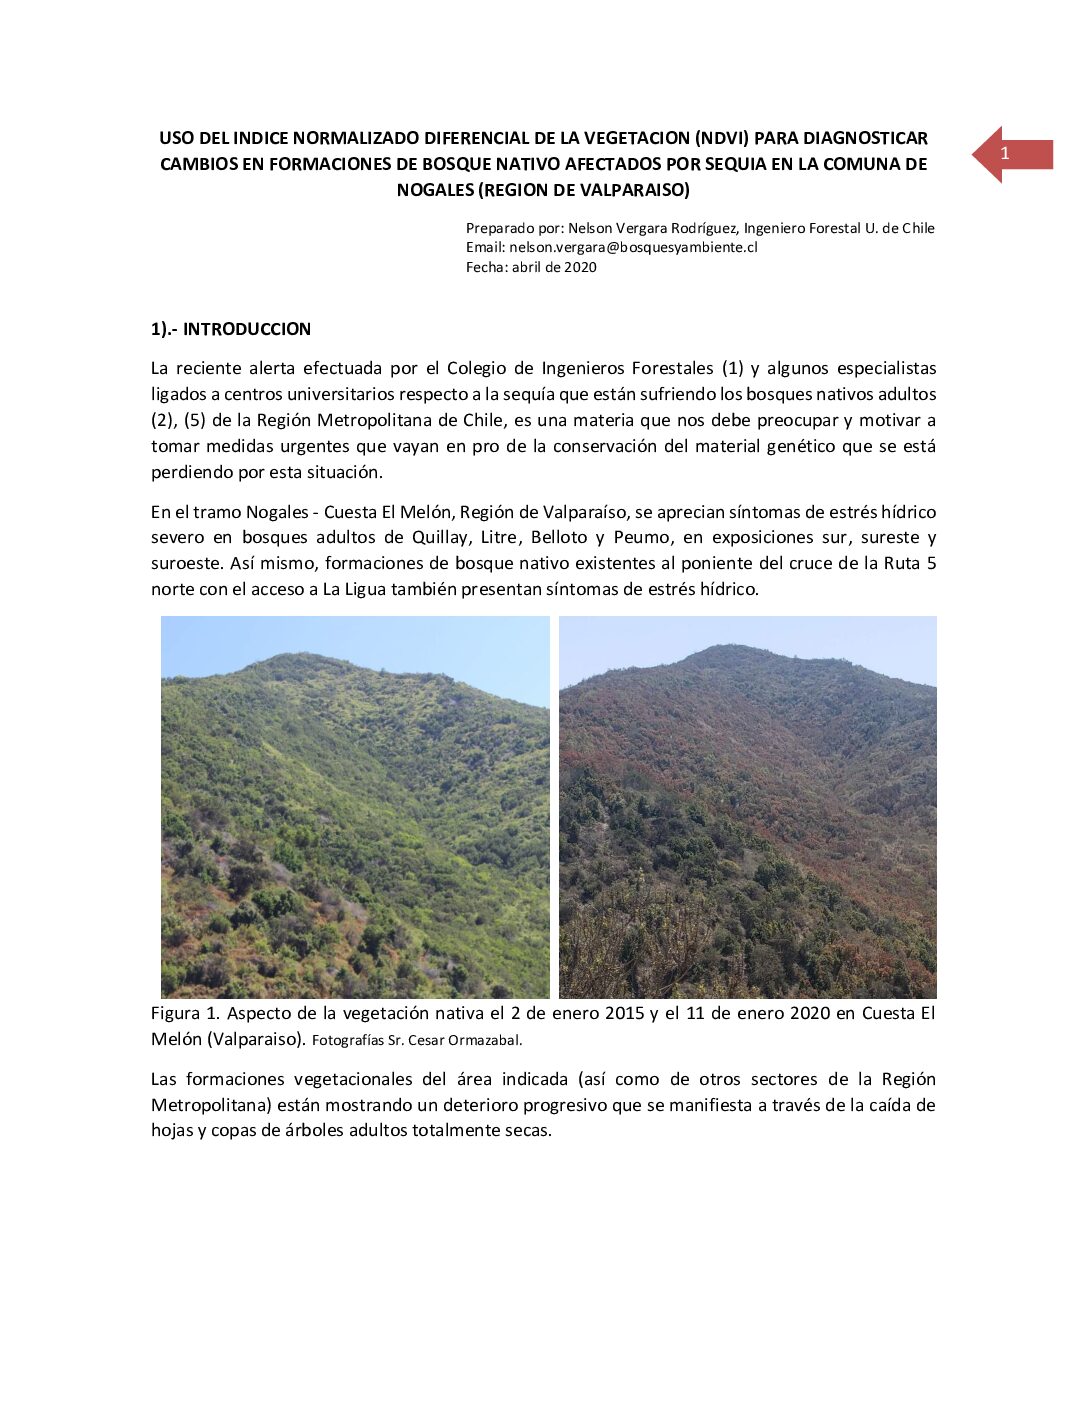 Uso del NDVI para detectar cambios en bosques nativos afectados por sequía comuna Nogales region Vaparaiso